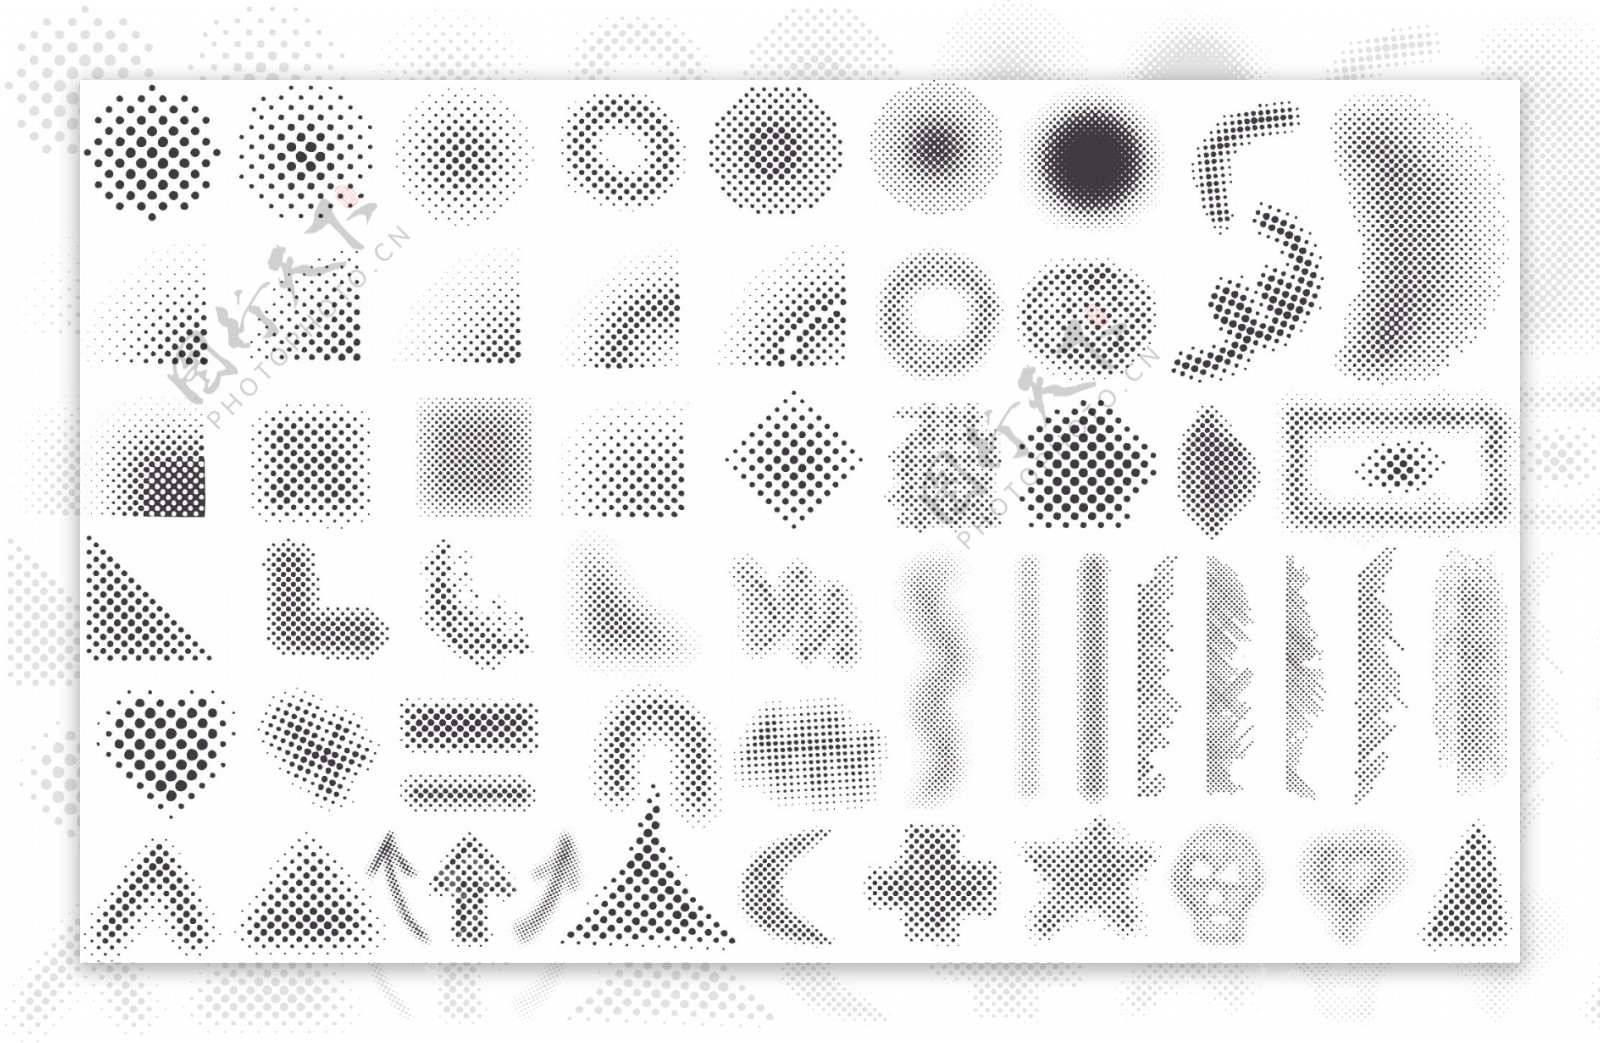 9个网点图形的黑白设计元素系列矢量素材